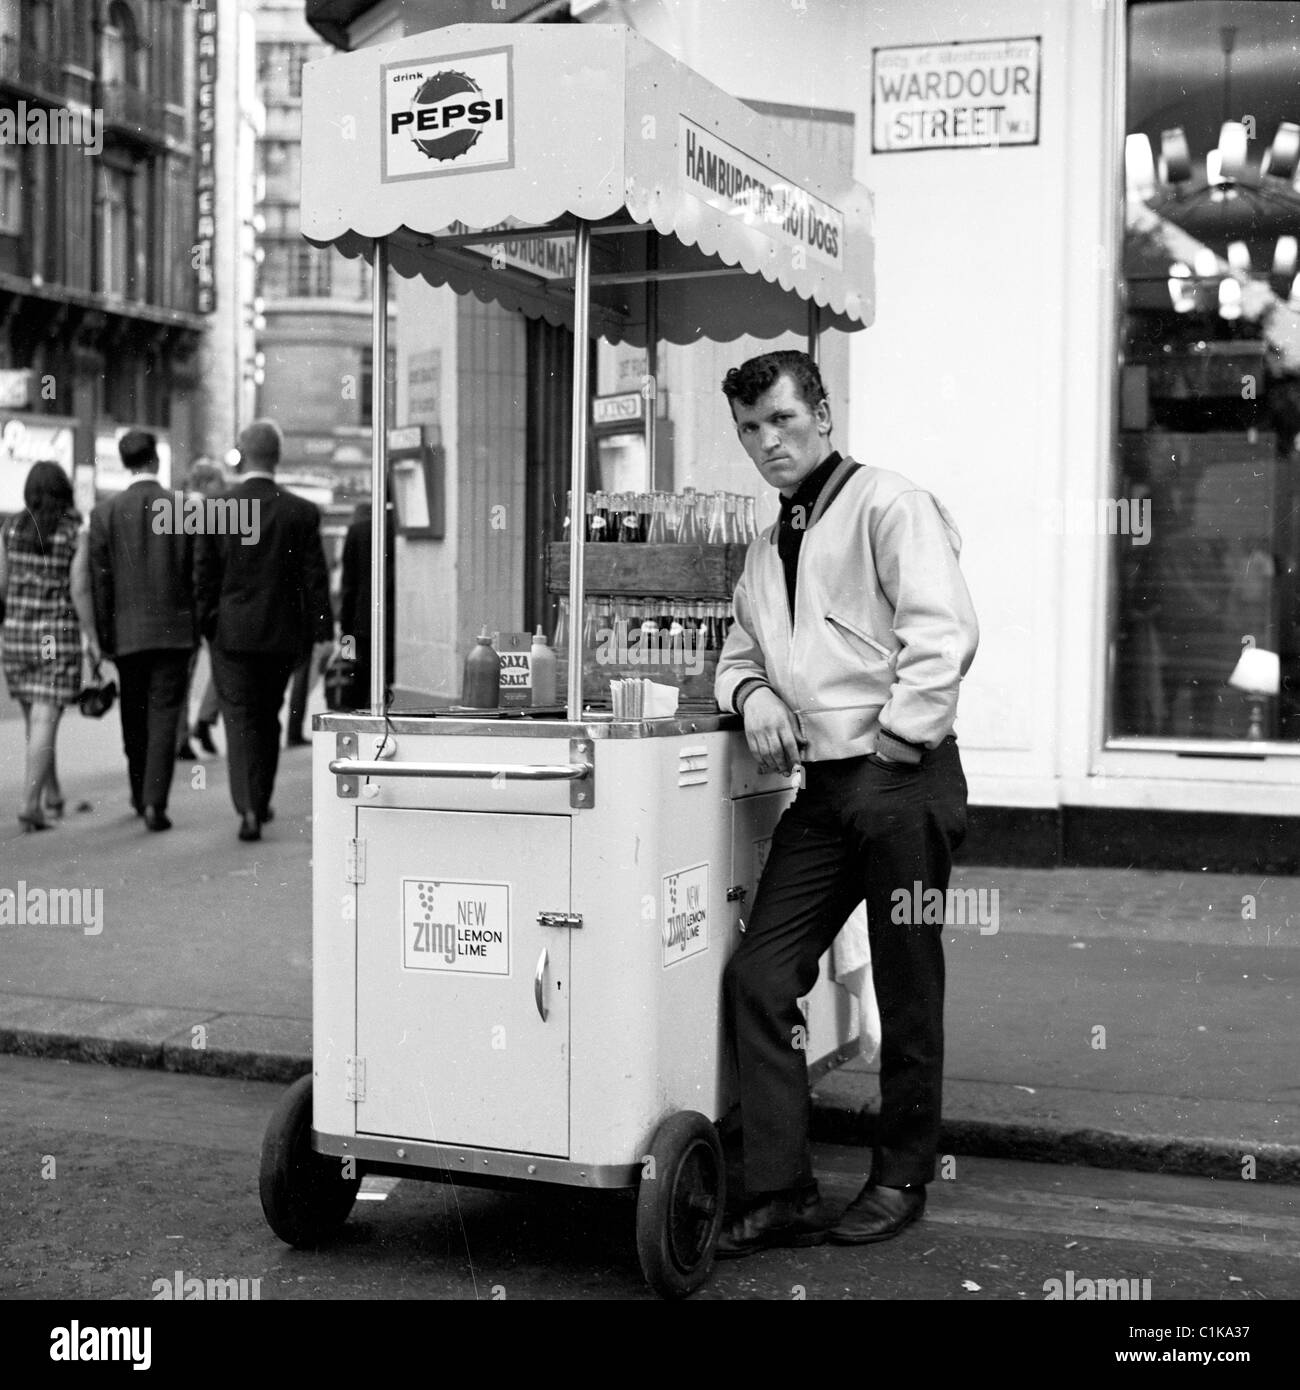 1960er, London. Tragbarer Hotdog-Stand und männlicher Verkäufer an der Ecke Wardour Street, in diesem historischen Bild von J Allan Cash. Stockfoto